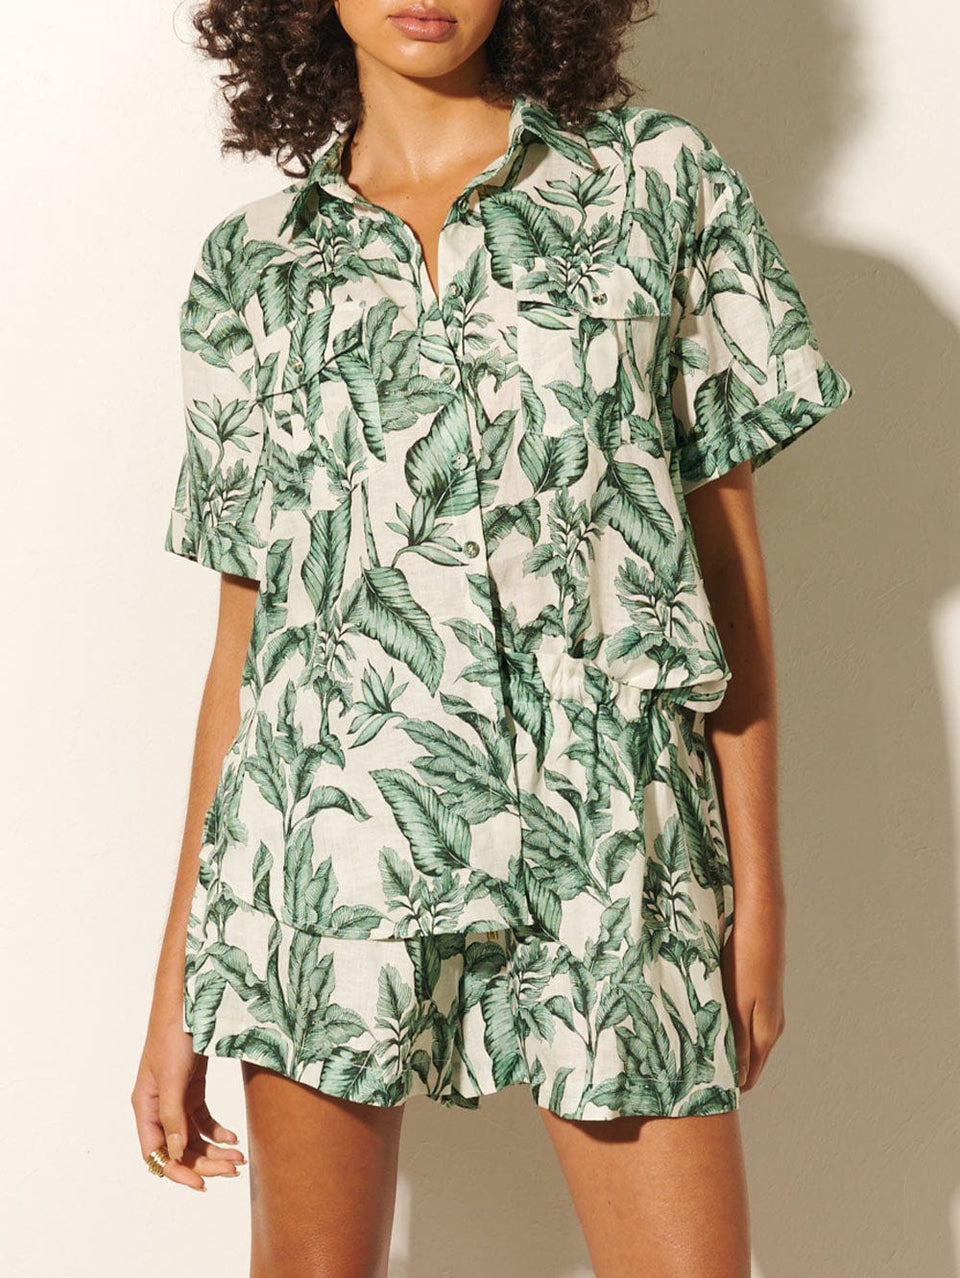 Tropico Short KIVARI | Model wears palm leaf print shorts